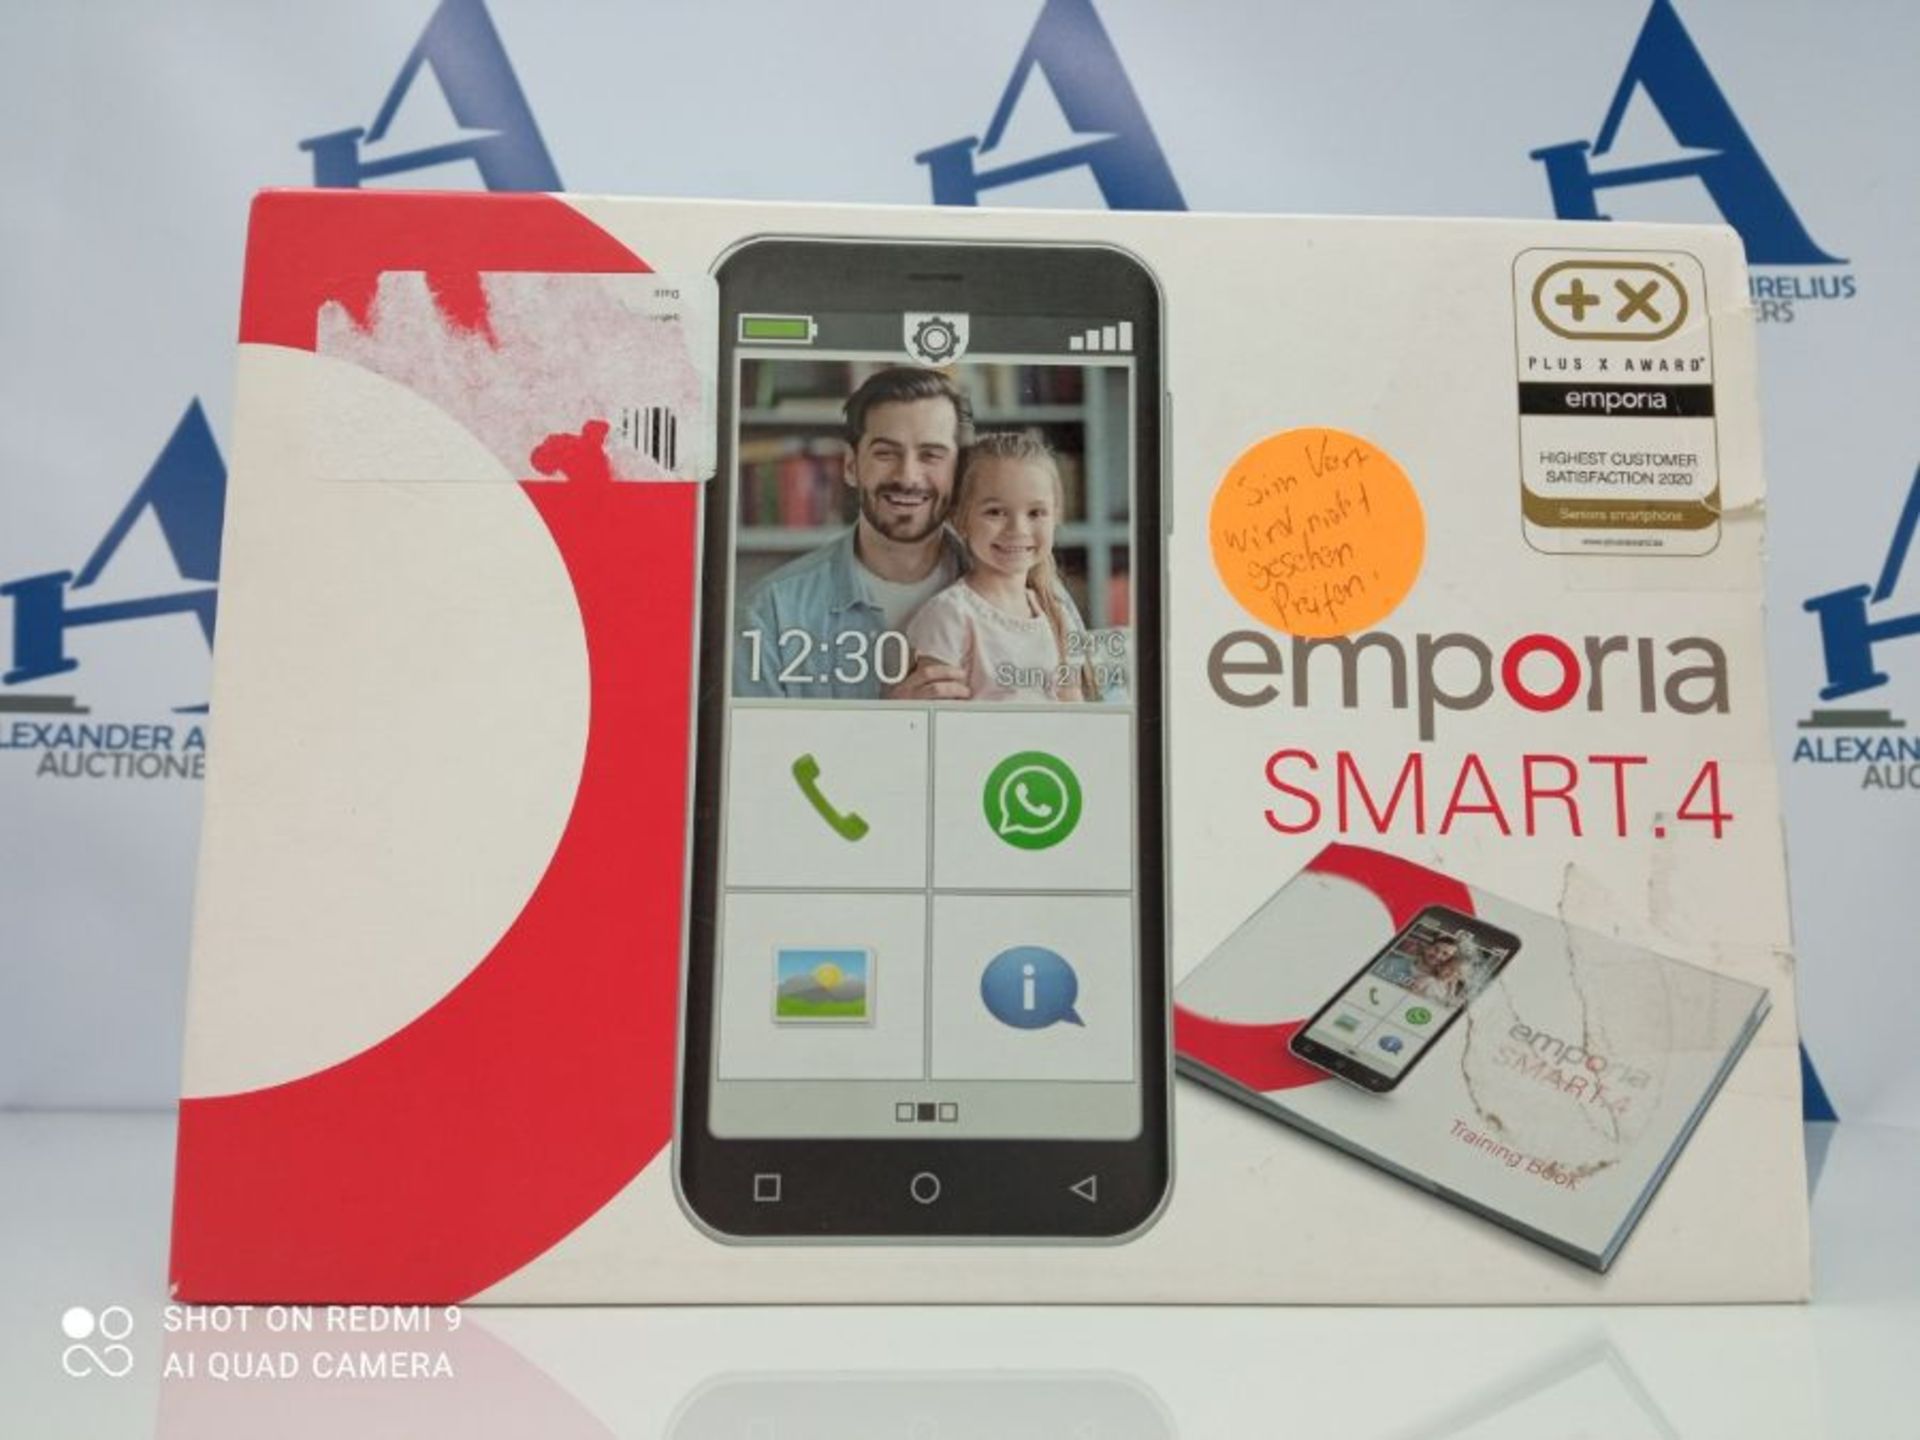 RRP £124.00 Emporia SMART 4 - Ce smartphone est juste juste pour ceux qui le veulent utiles, compa - Image 2 of 3